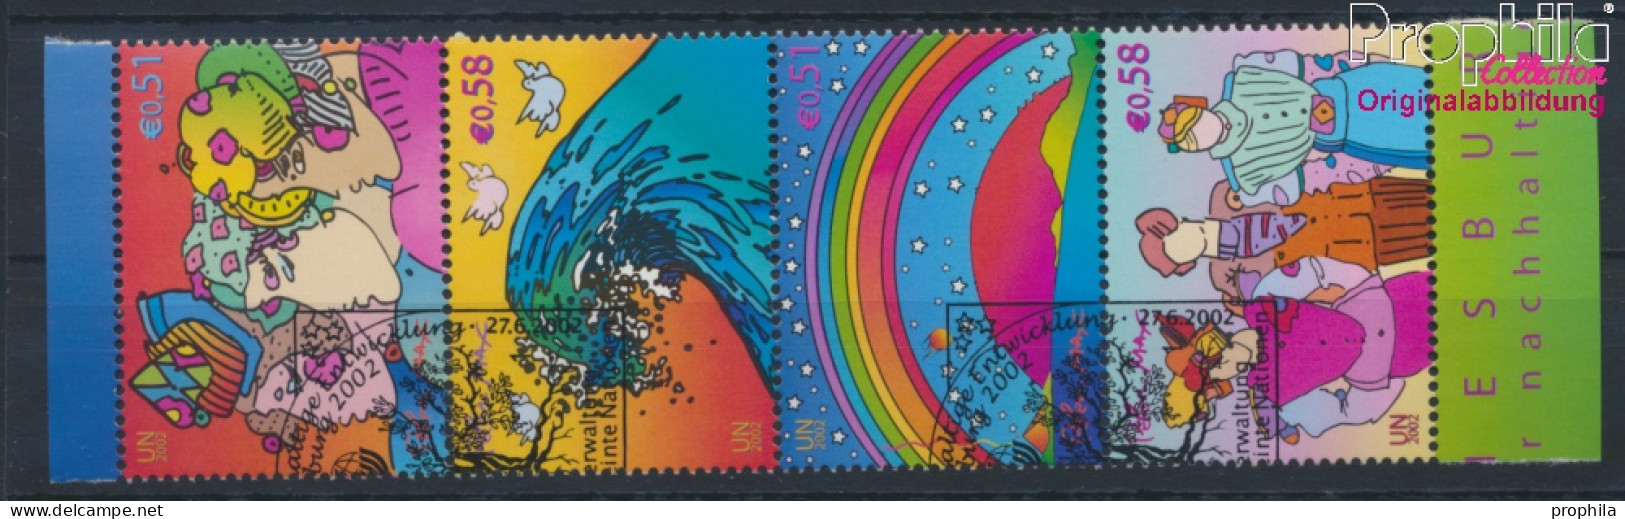 UNO - Wien 367-370 Viererstreifen (kompl.Ausg.) Gestempelt 2002 Nachhaltige Entwicklung (10044982 - Used Stamps